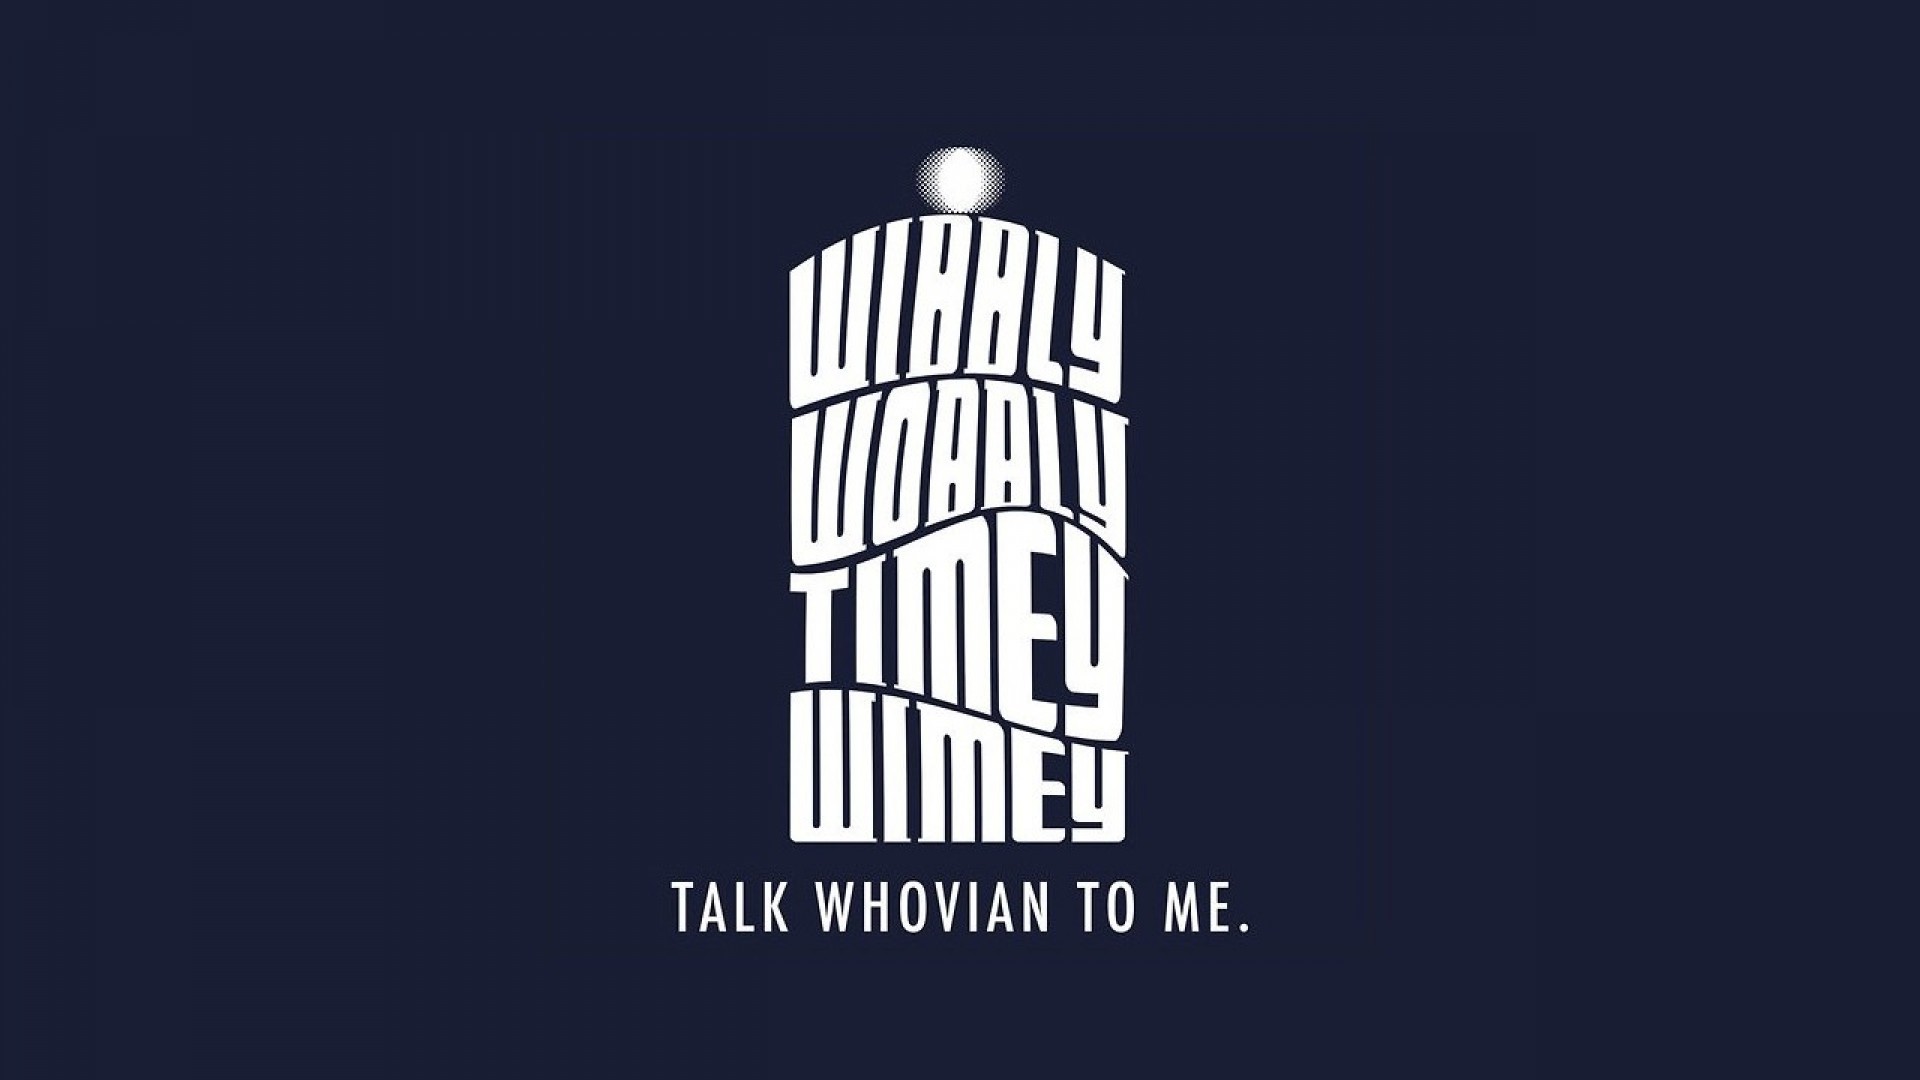 Doctor Who Tardis TV TARDIS Shows HD Wallpapers, Desktop Free Wallpapers Pinterest Tardis wallpaper, Wallpaper desktop and Wallpaper